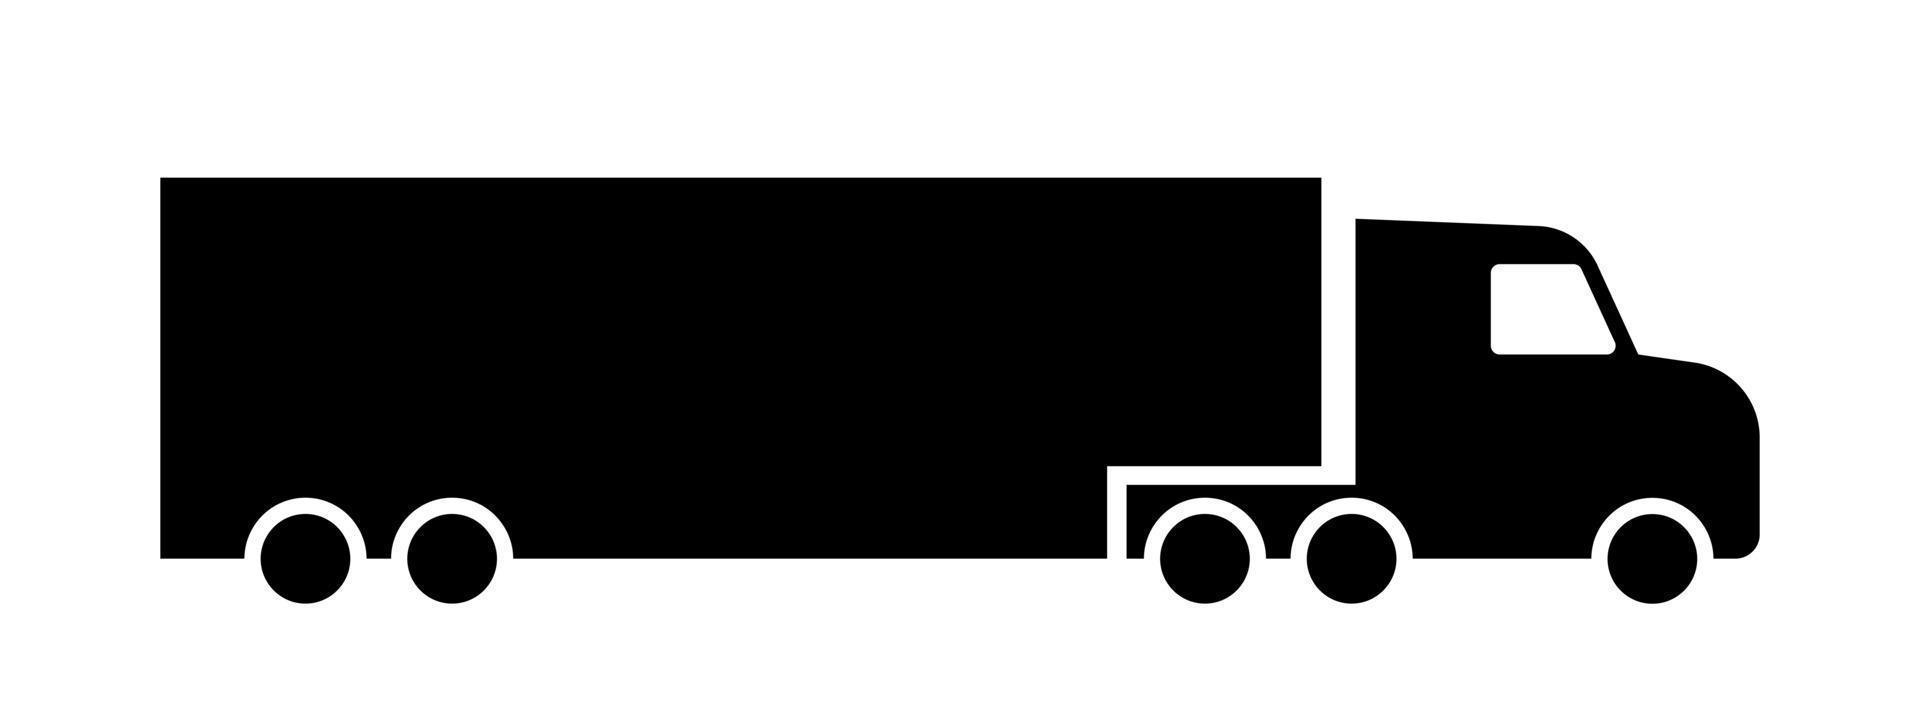 lungo bottino camion icona. trasporto veicolo per consegna di merce attraverso nazione e intercontinentale trasporto con pesante contenitori e vettore carico.